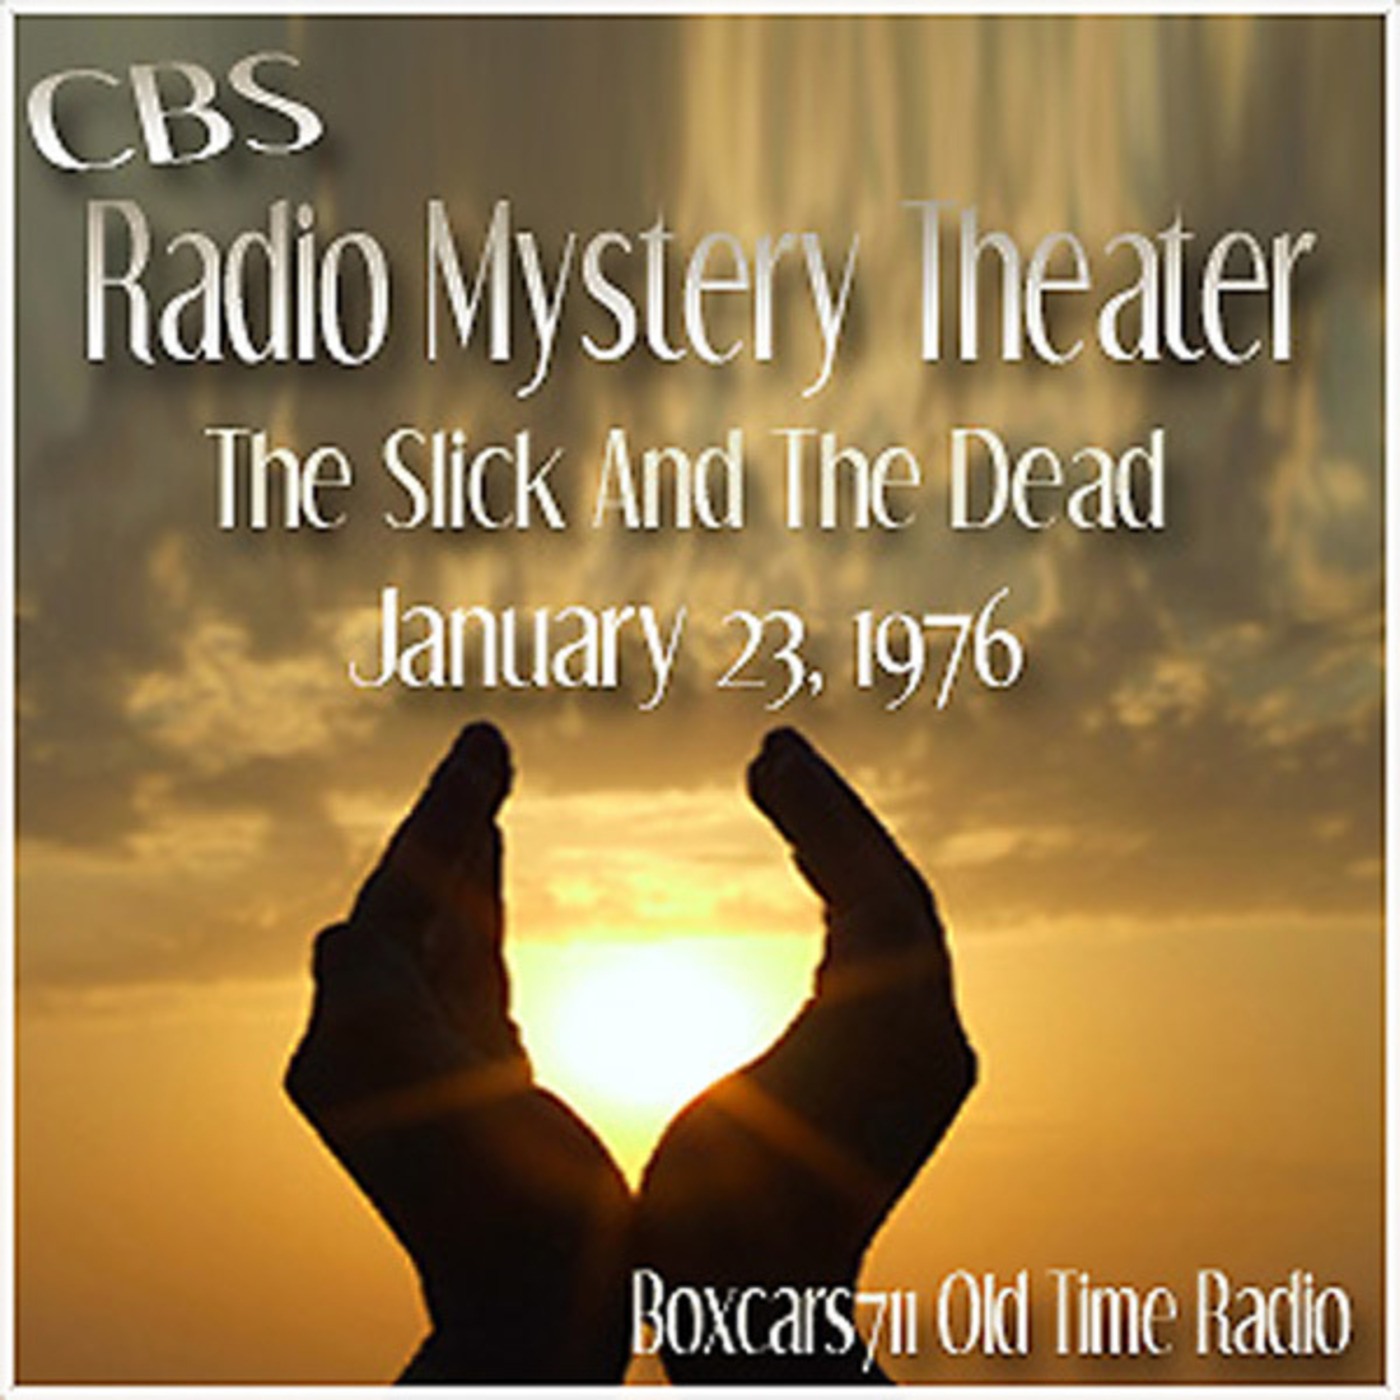 Episode 9552: CBS Radio Mystery Theater - 